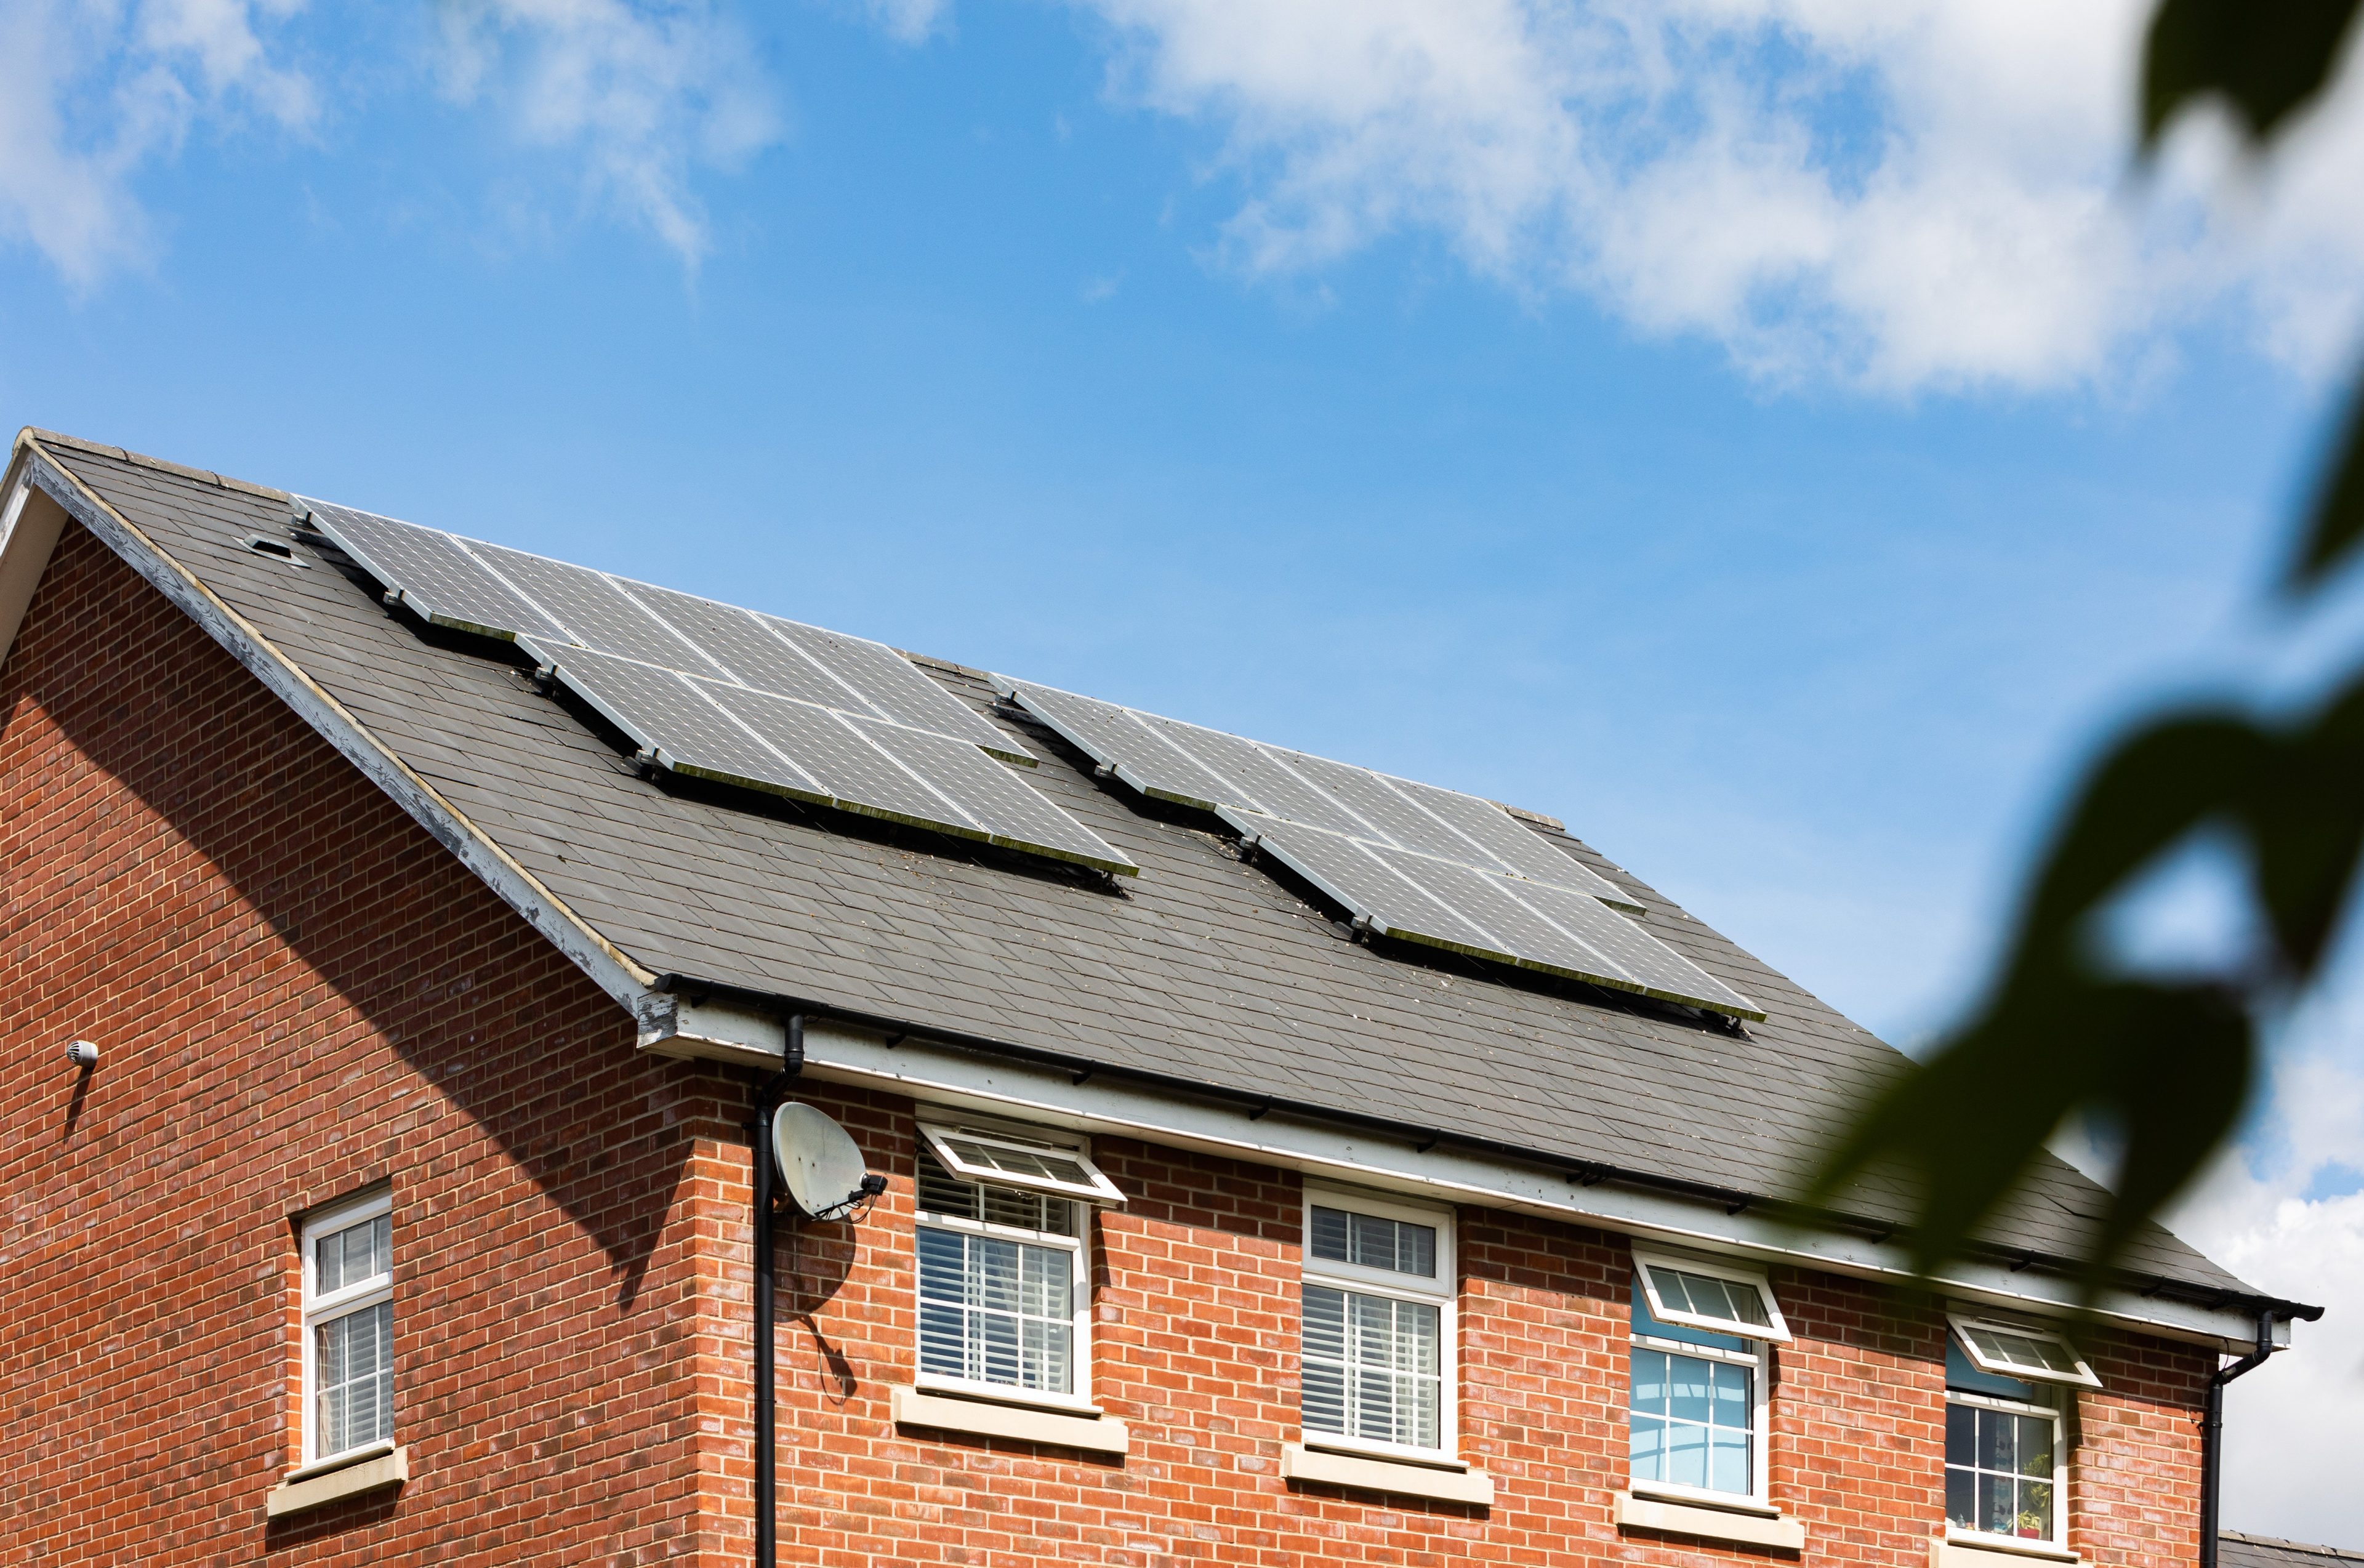 Waarom je zou moeten investeren in zonnepanelen?